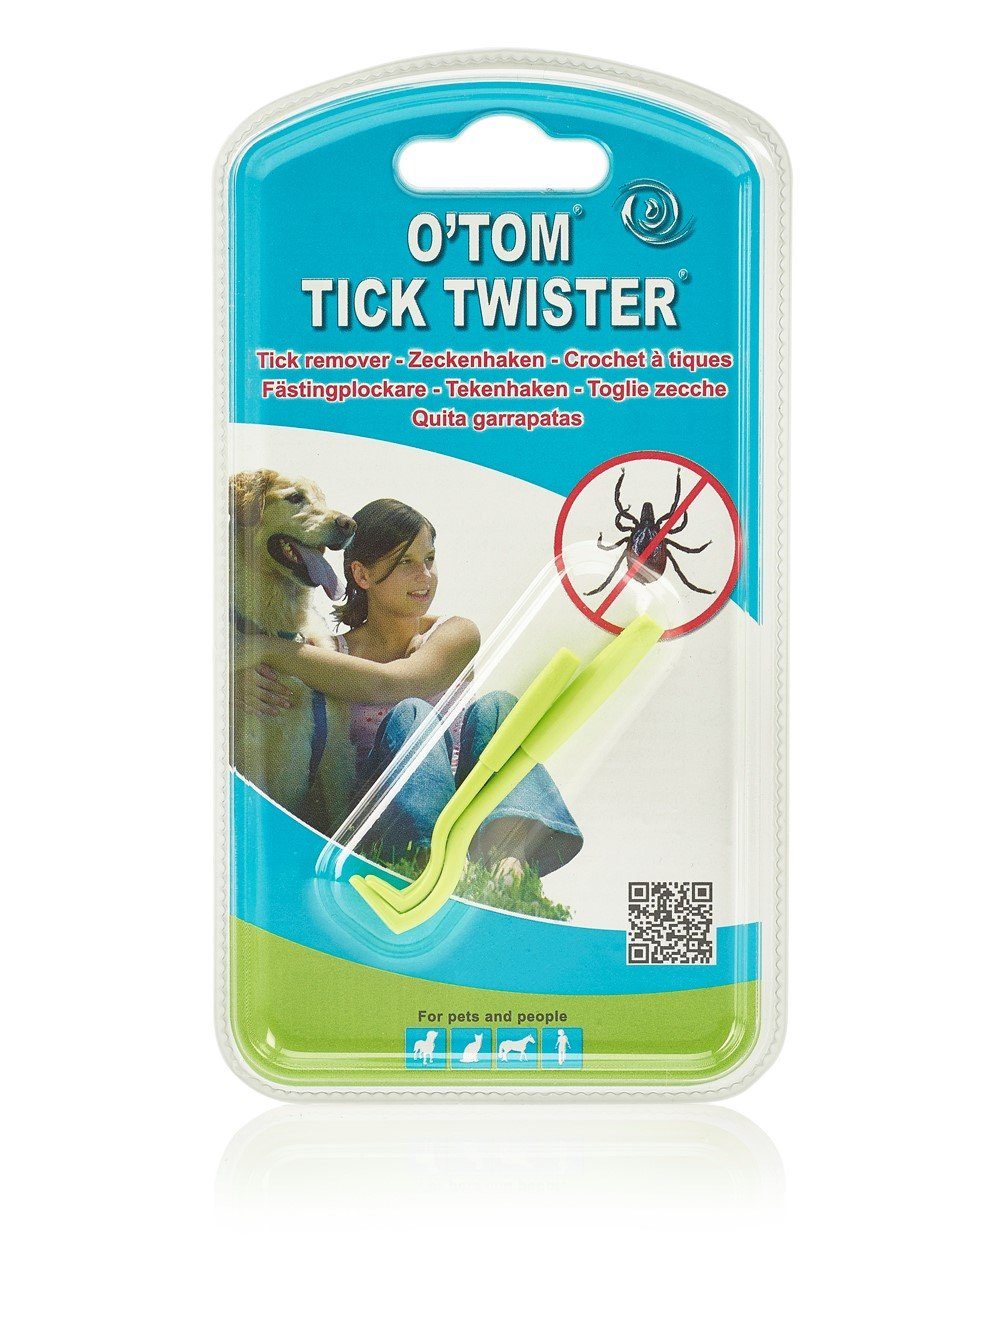 grün TWISTER® Zeckenpinzette Zeckenhaken TickTwister O'TOM/TICK